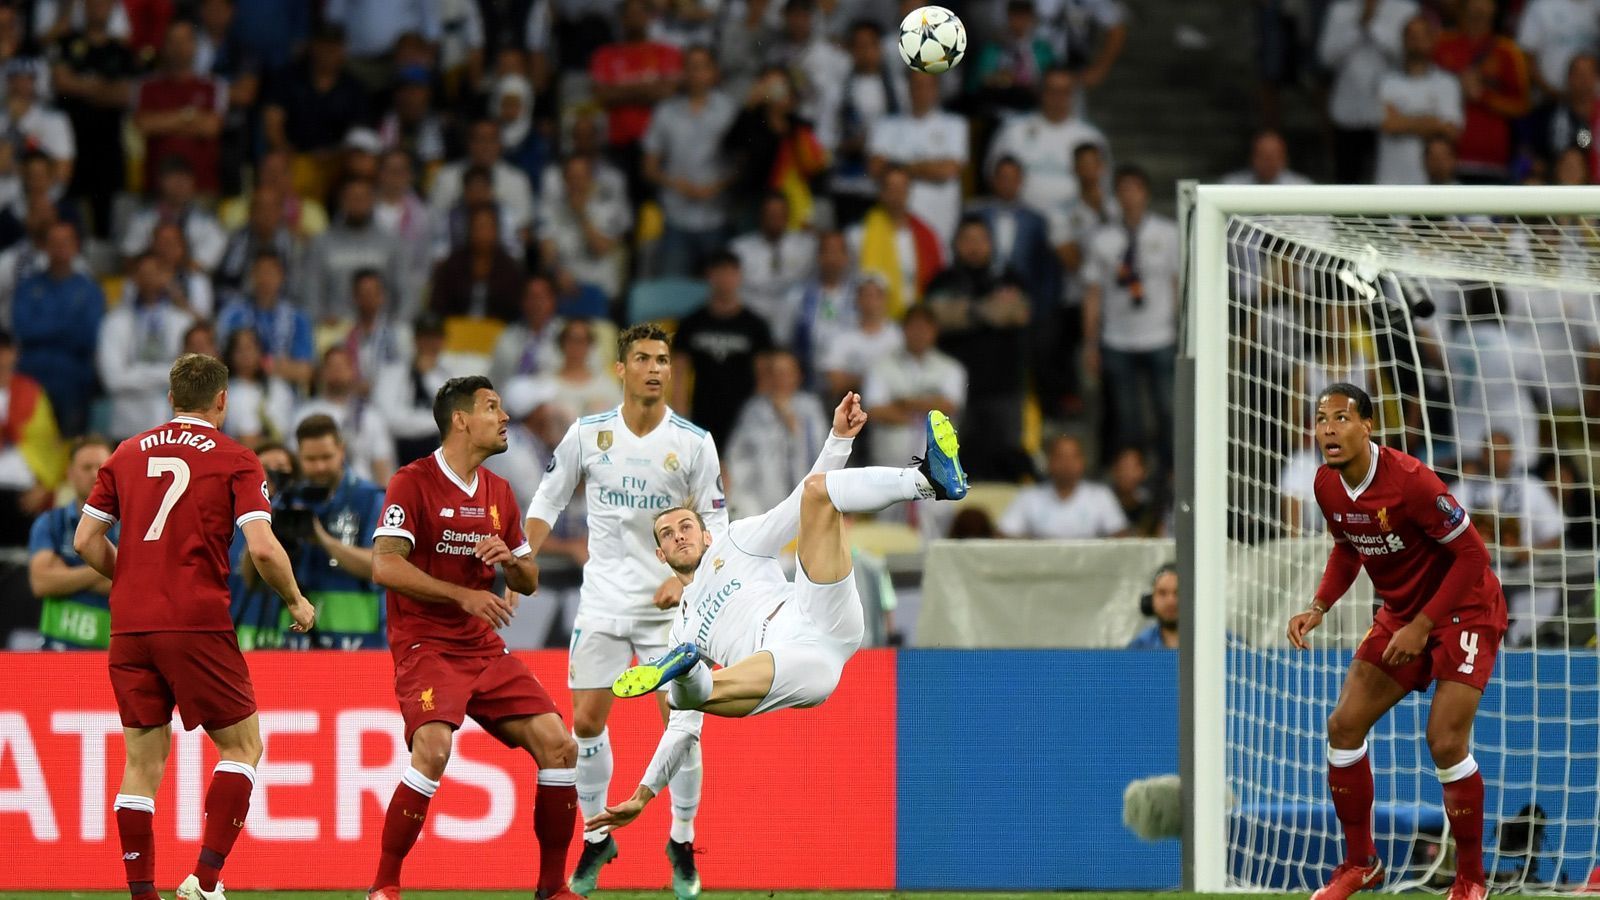 
                <strong>Traumtor Bale - Real führt wieder</strong><br>
                Denn dann kommt Gareth Bale - und trifft ähnlich sehenswert wie schon Cristiano Ronaldo per Fallrückzieher gegen Juventus Turin im Viertelfinale. Real führt wieder 2:1.
              